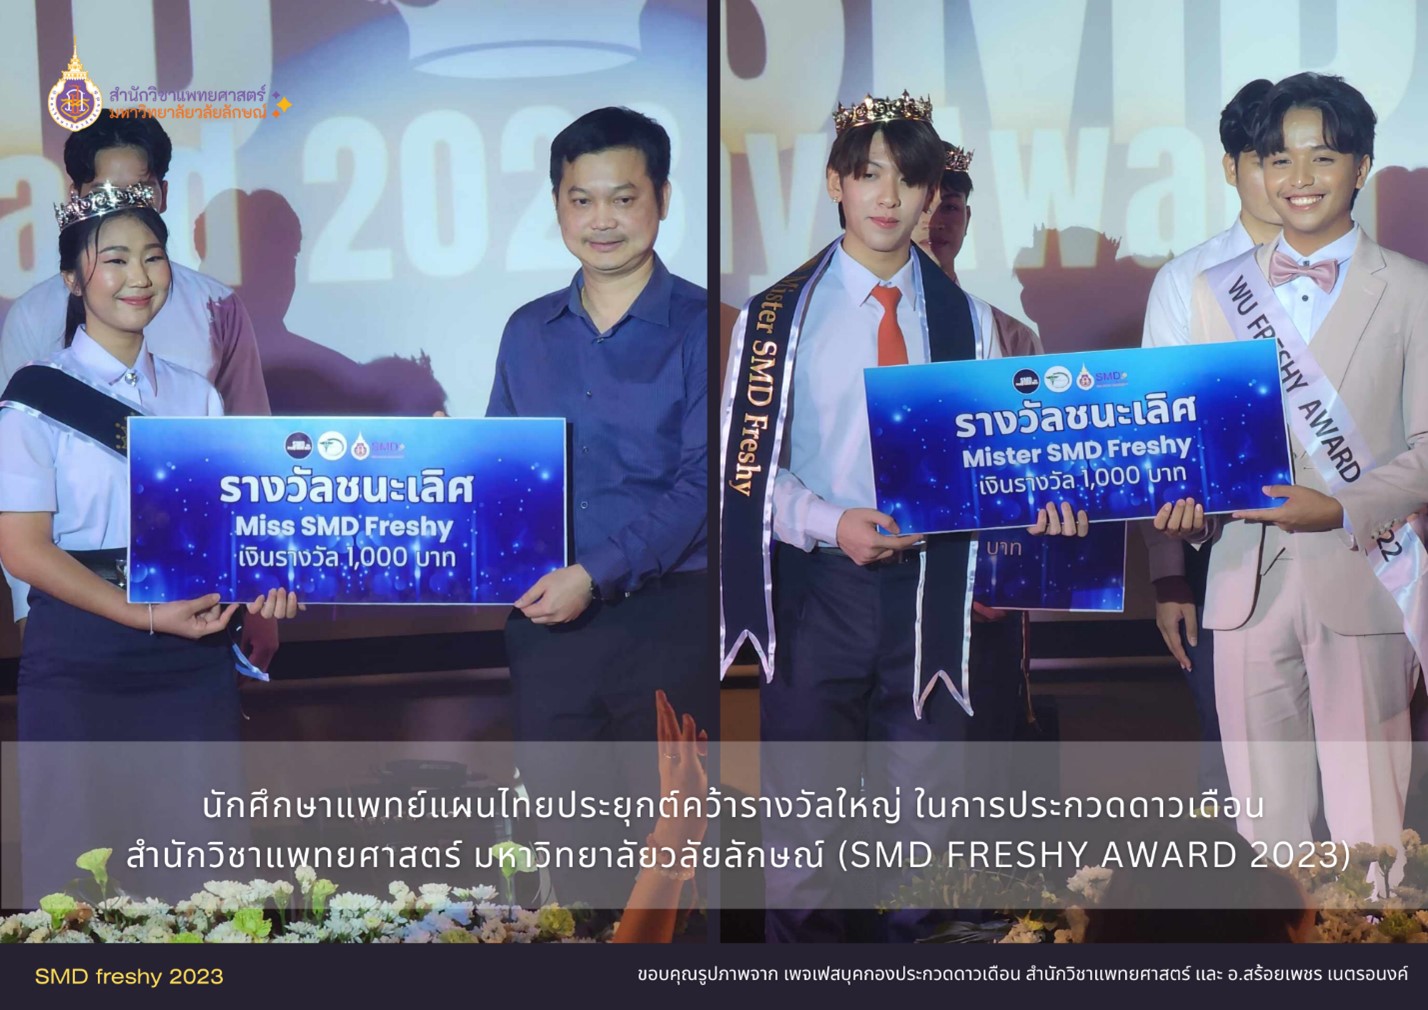 นักศึกษาแพทย์แผนไทยประยุกต์คว้ารางวัลใหญ่ ในการประกวดดาวเดือน สำนักวิชาแพทยศาสตร์ มหาวิทยาลัยวลัยลักษณ์ (SMD FRESHY AWARD 2023)